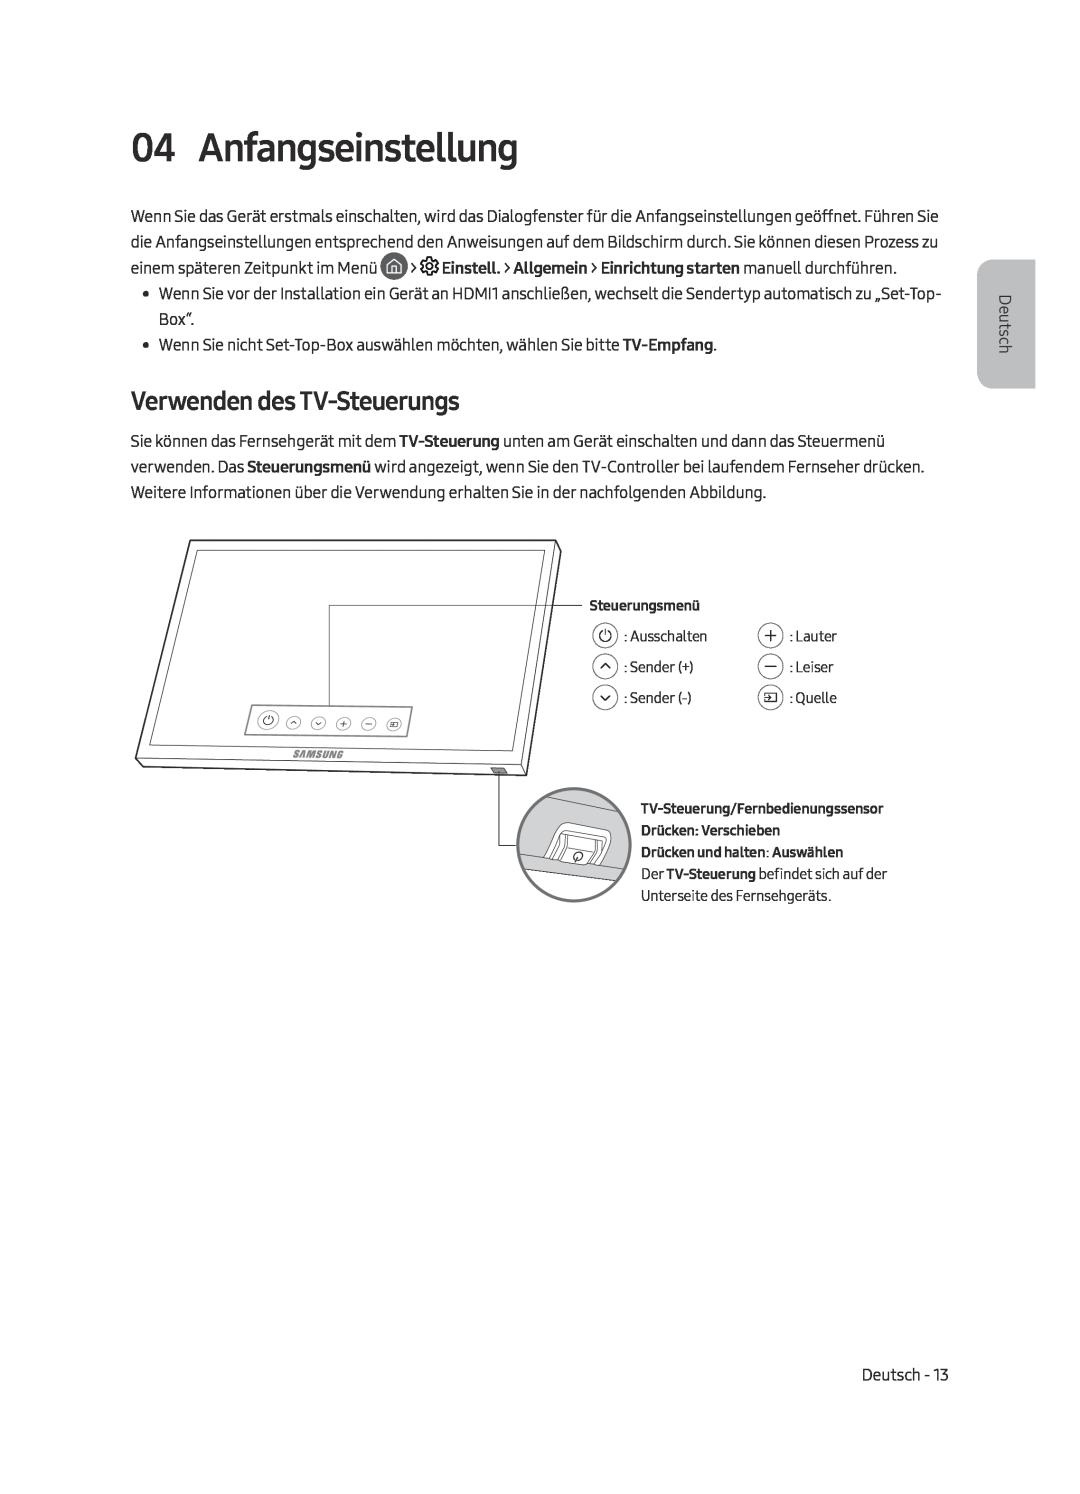 Samsung UE82MU7000TXXU, UE55MU7009TXZG, UE49MU7009TXZG, UE49MU7000TXZG manual Anfangseinstellung, Verwenden des TV-Steuerungs 